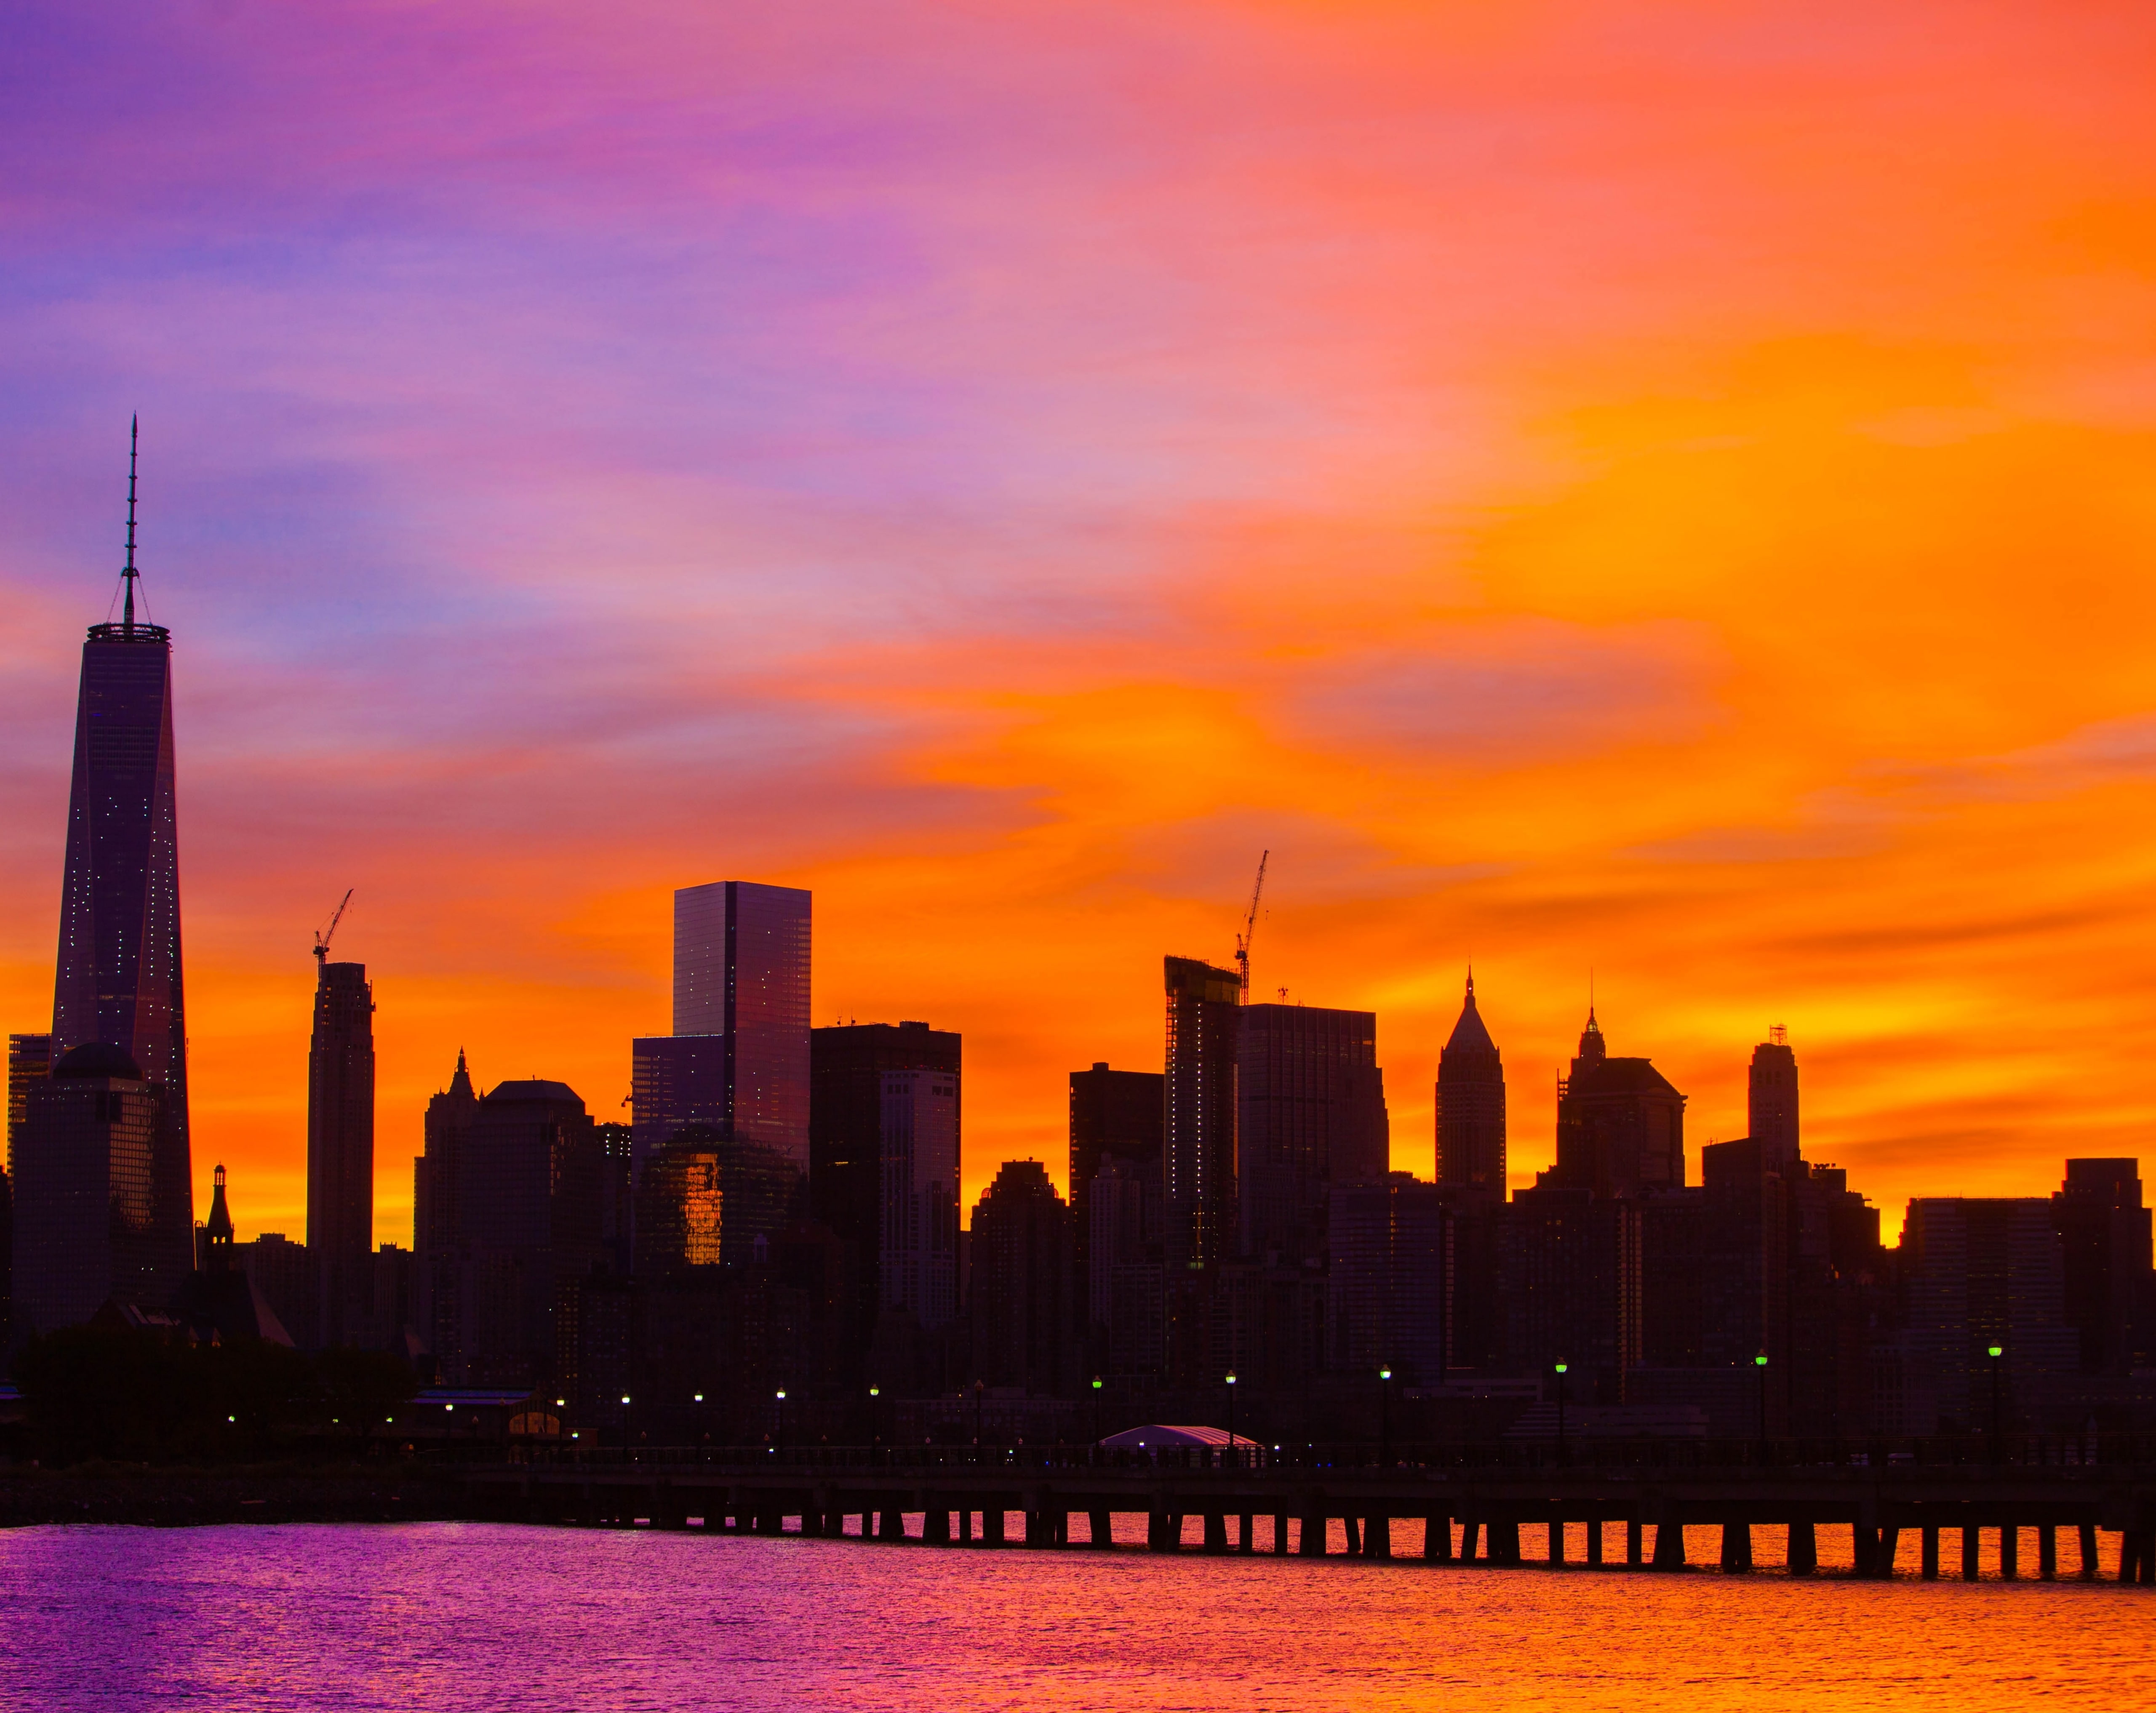 New York City sunrise, landscape photo of buildings, United States